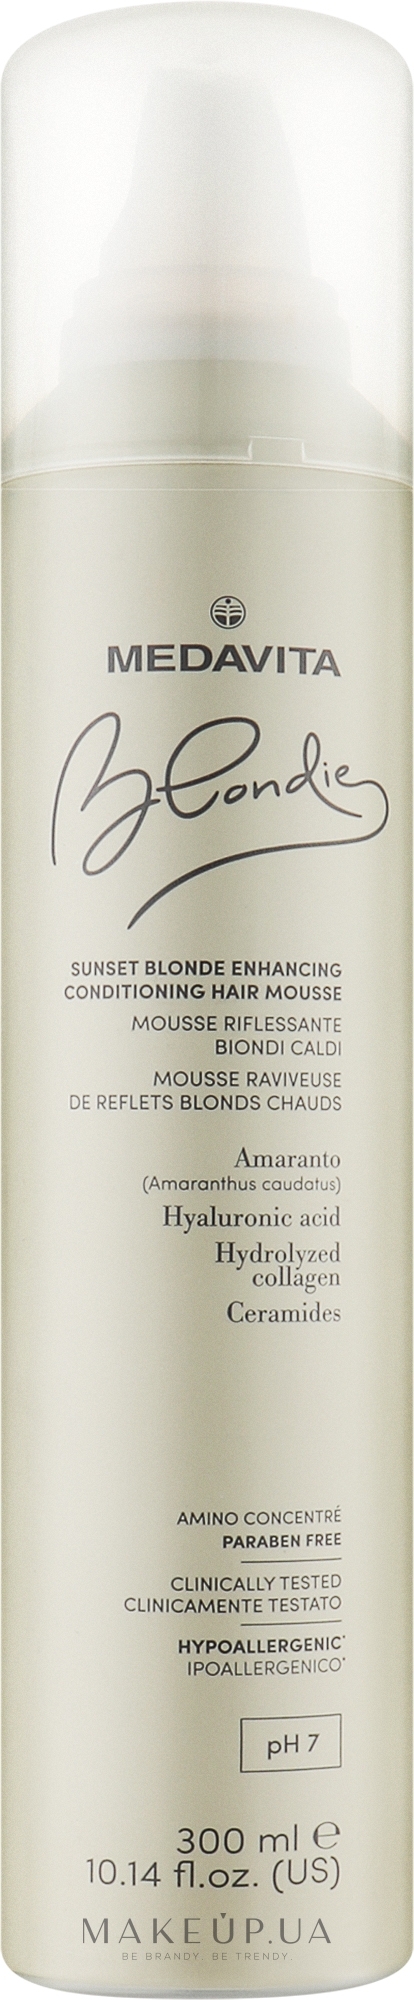 Мус-кондиціонер для посилення теплих відтінків блонду - Medavita Blondie Sunset Blonde Enhancing Conditioning Hair Mousse — фото 300ml